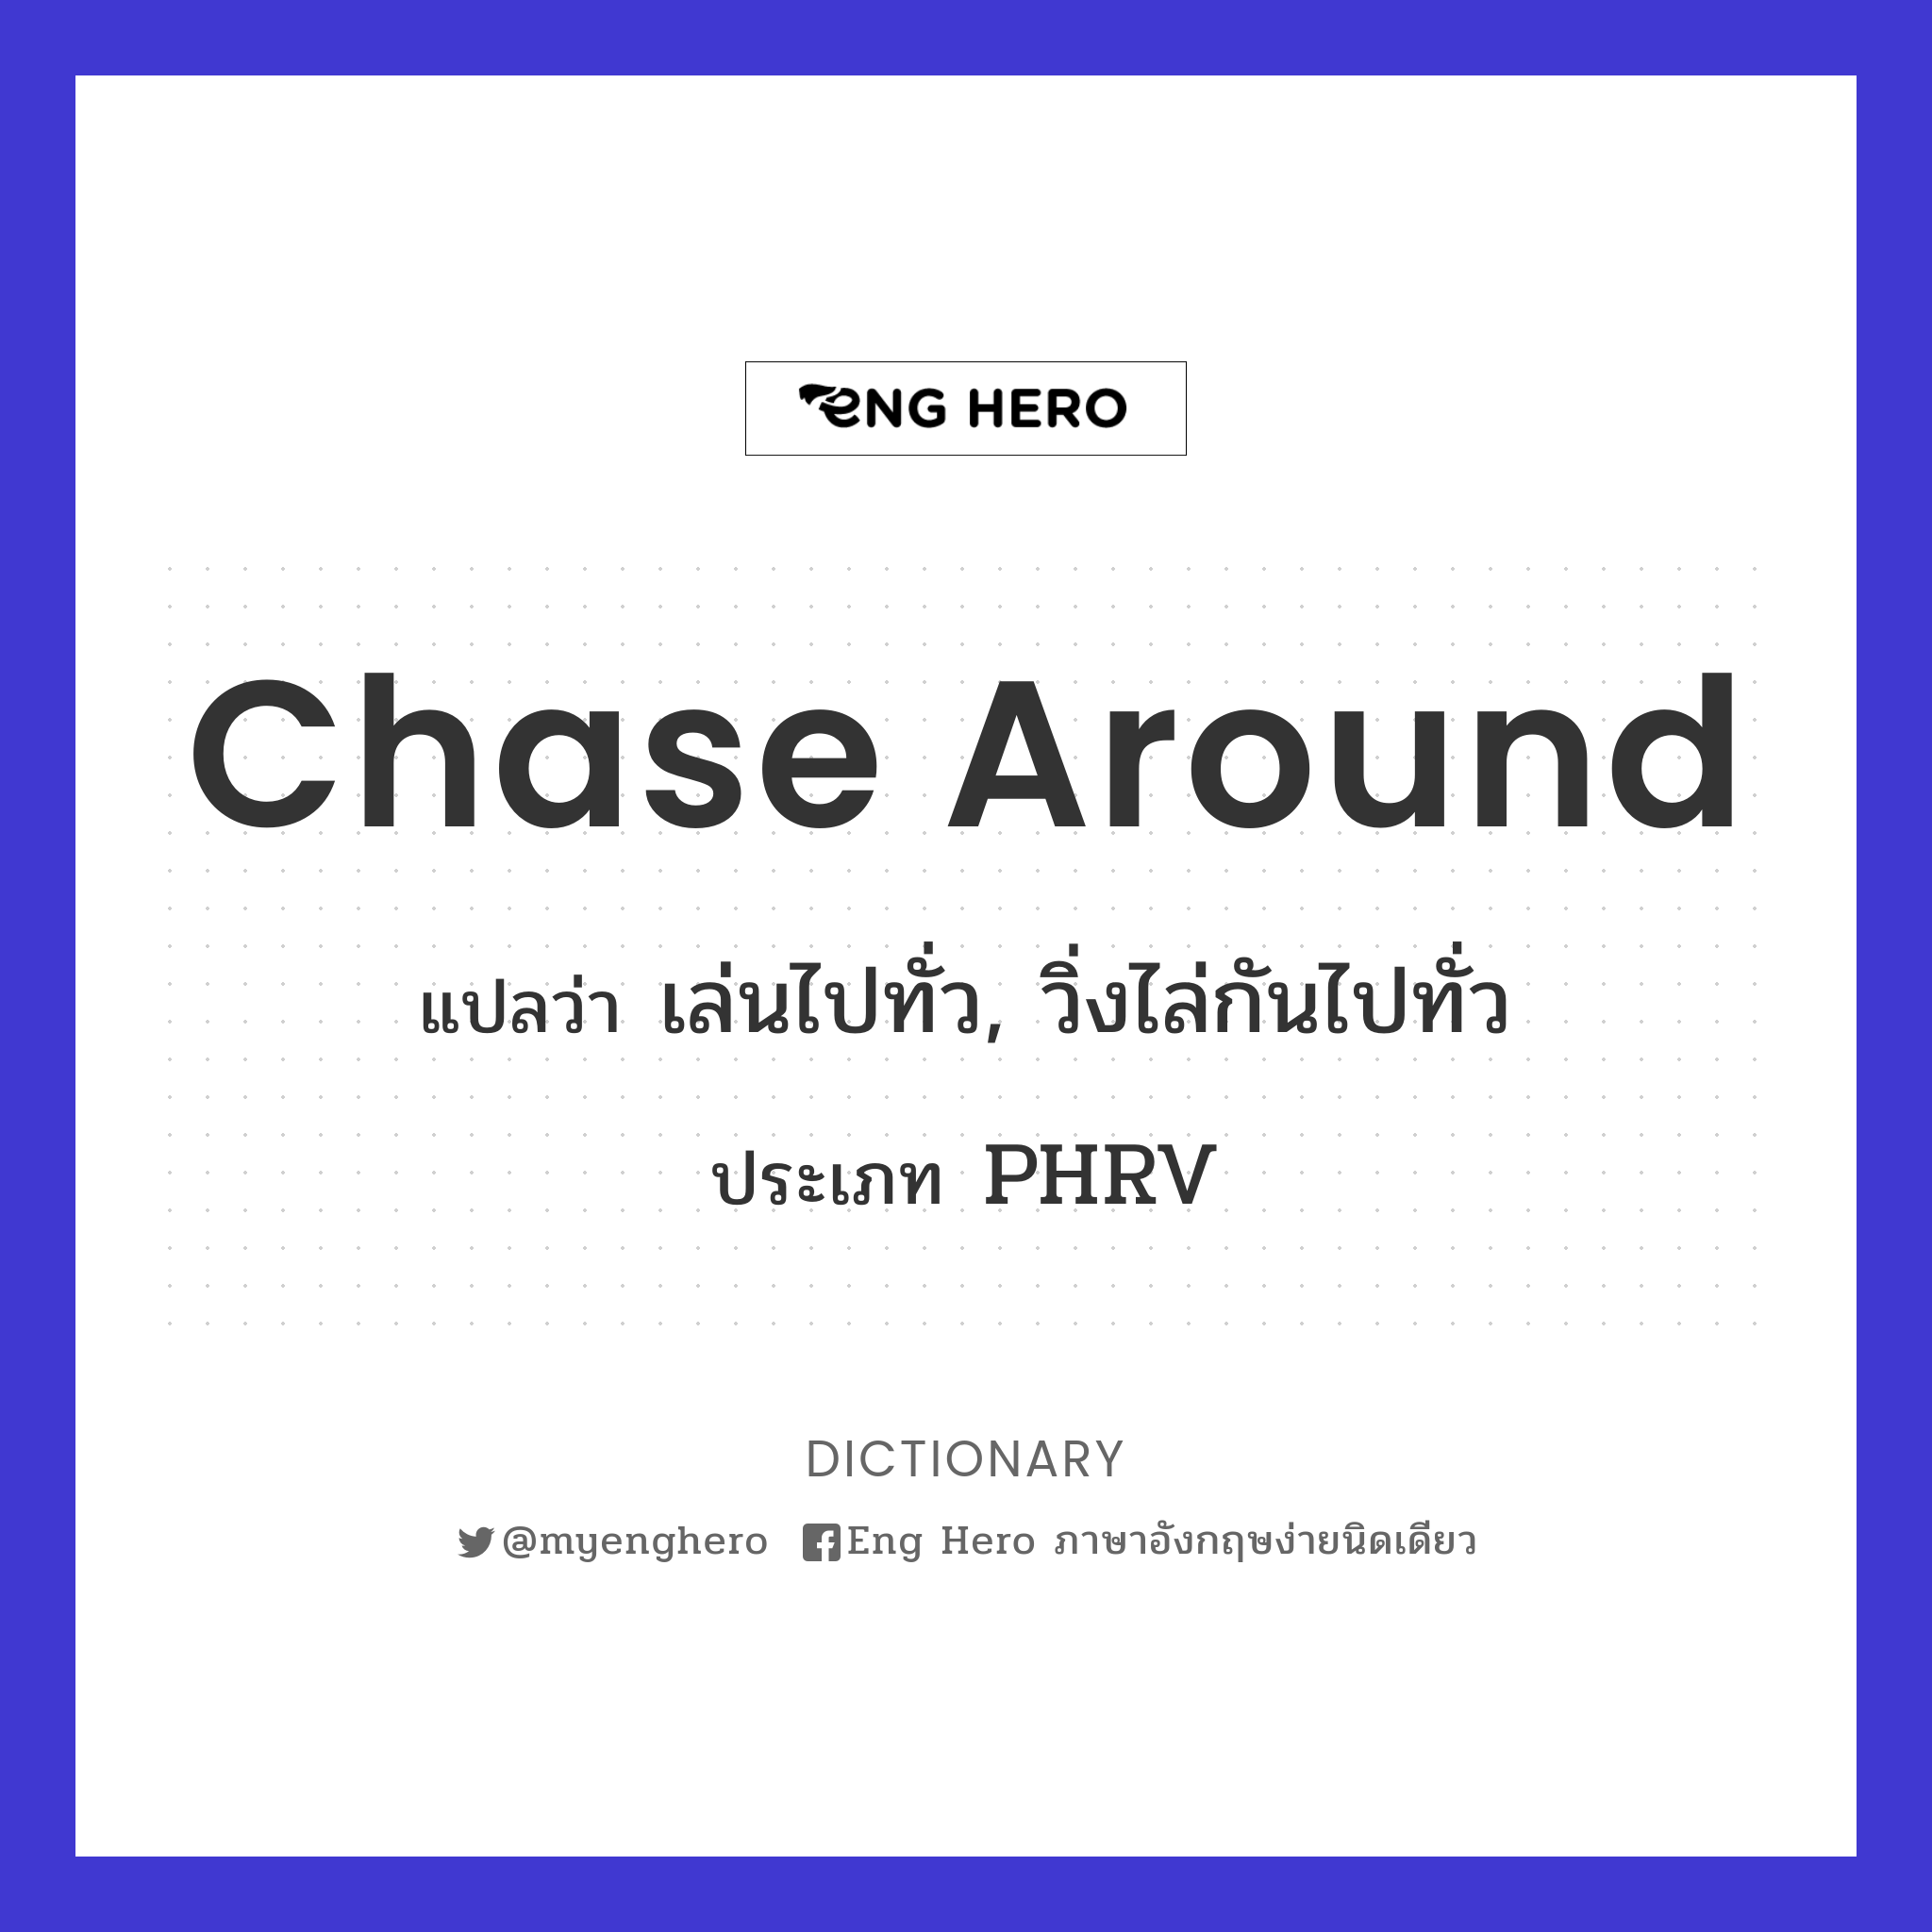 chase around